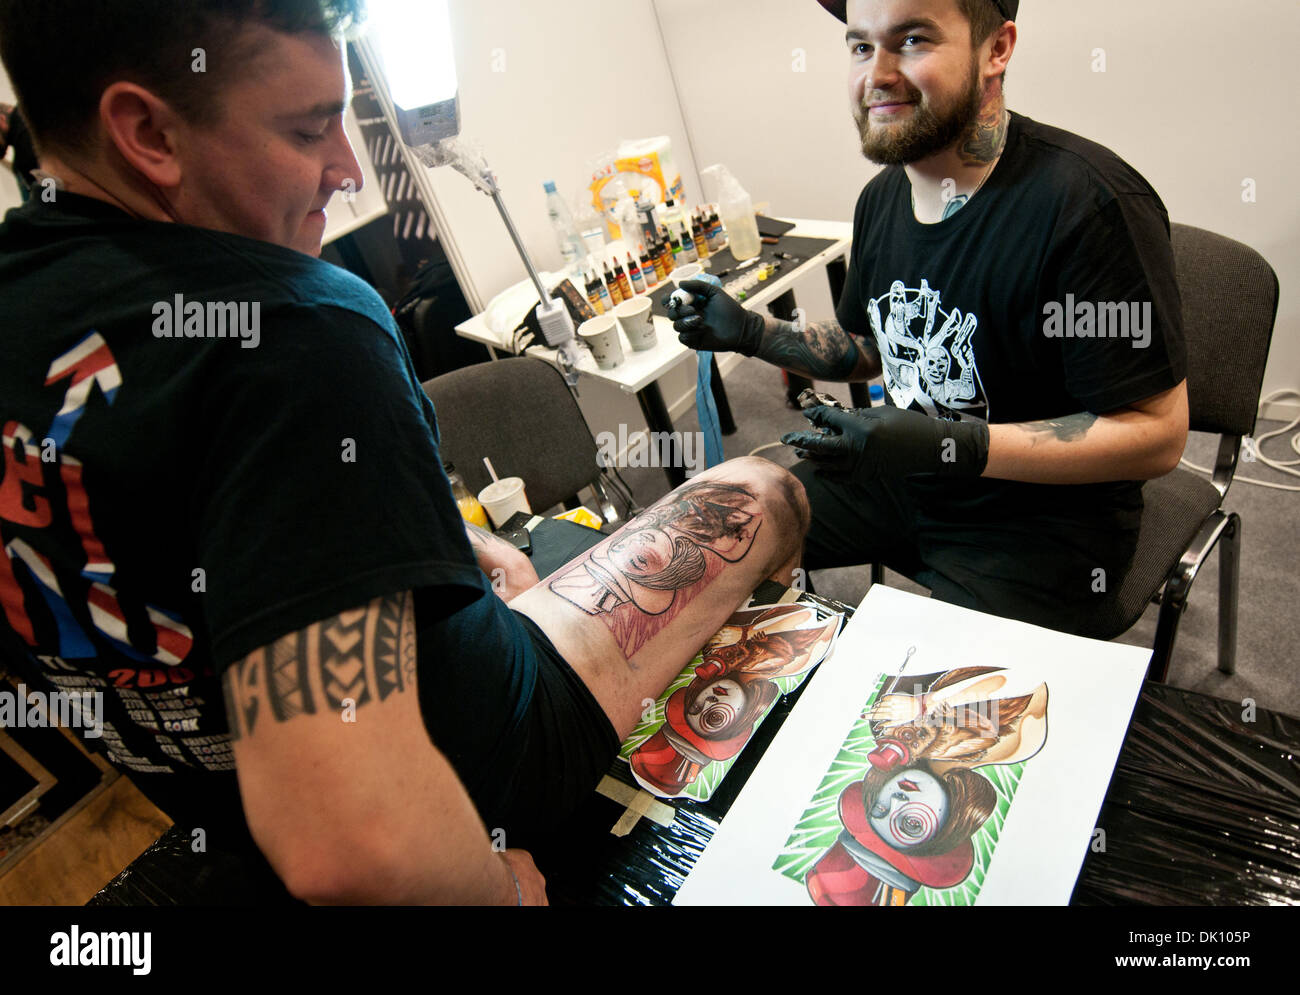 Tattoo Convention 2013 Stockfotos und -bilder Kaufen - Alamy